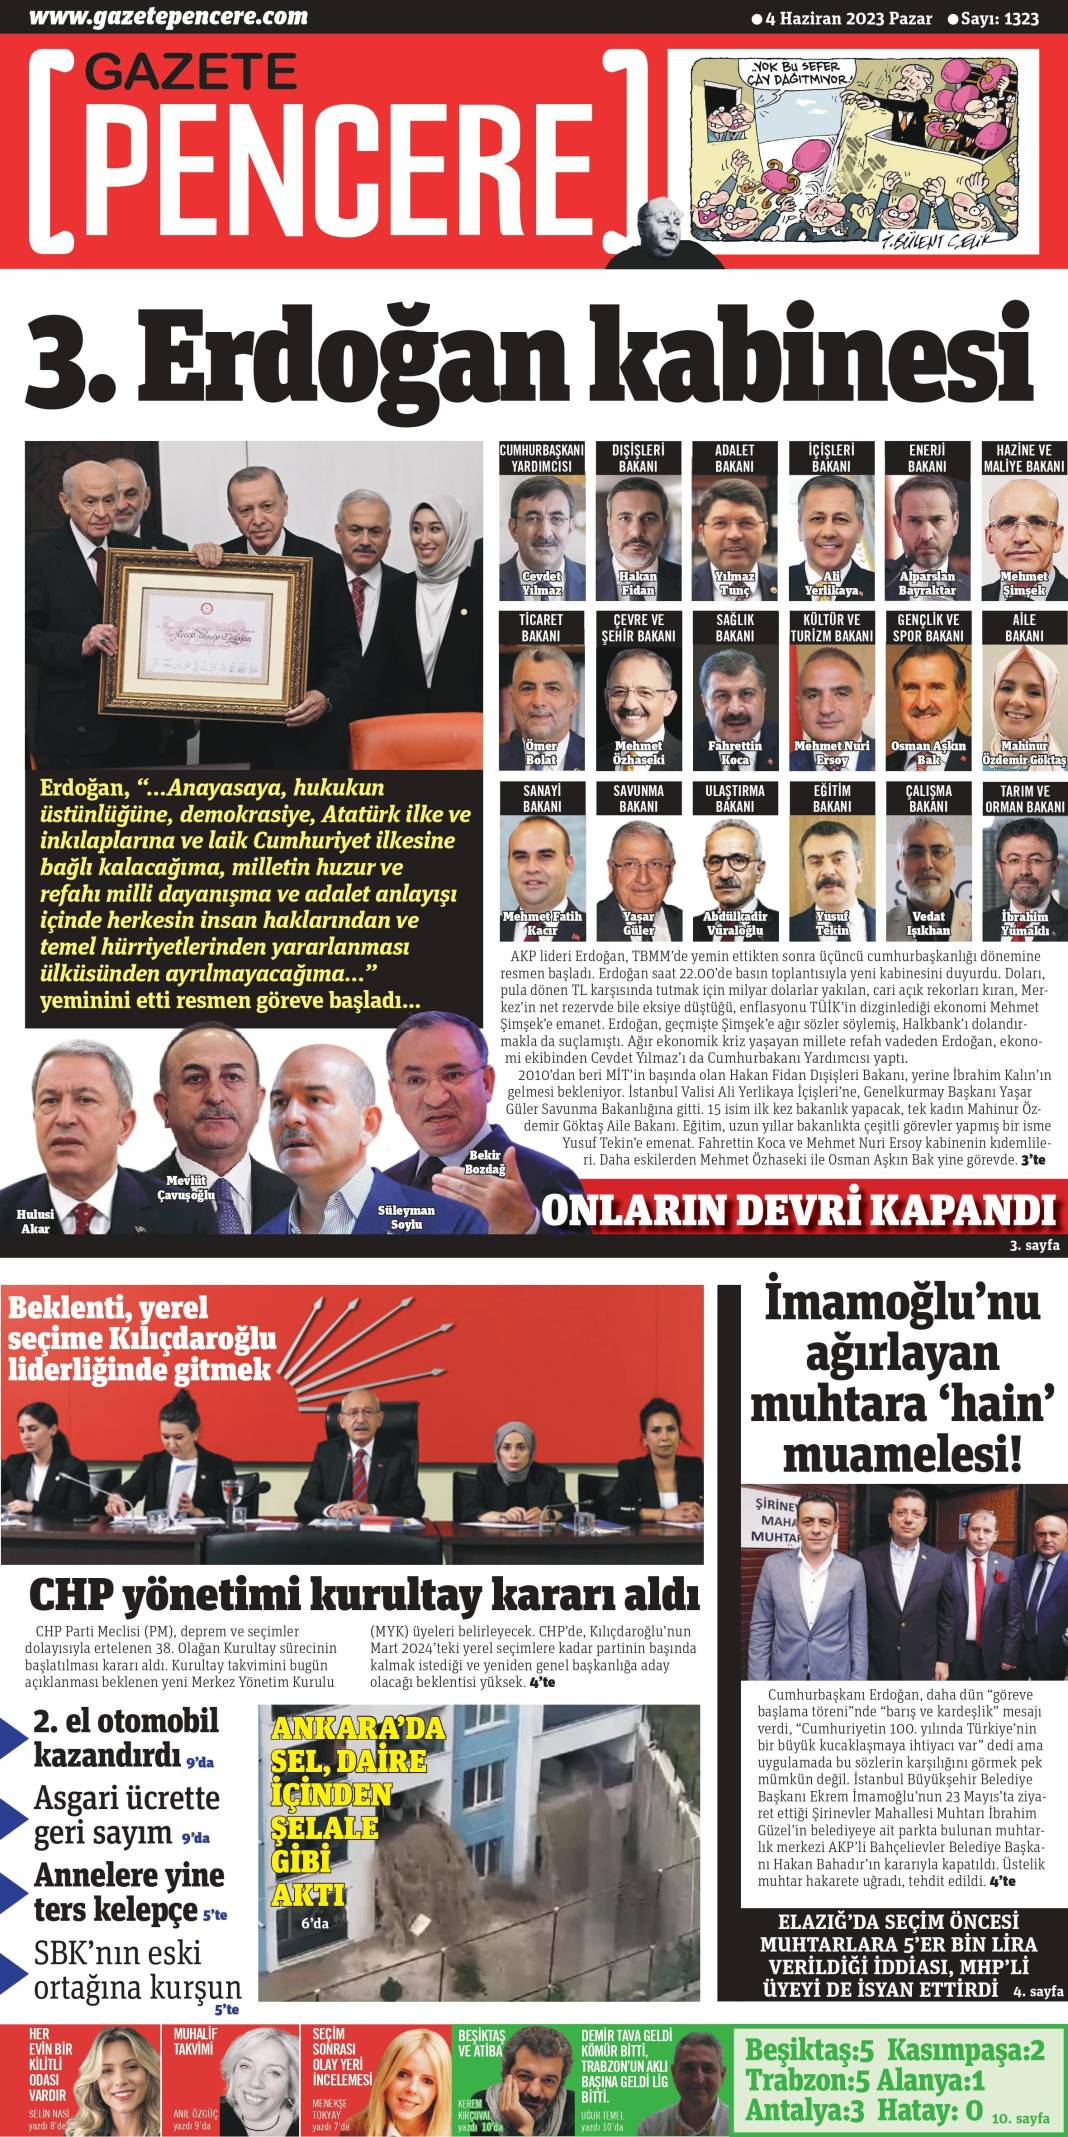 Gazeteler, Erdoğan’ın açıkladığı yeni kabine listesini manşetlerine nasıl taşıdı? İşte günün manşetleri 8